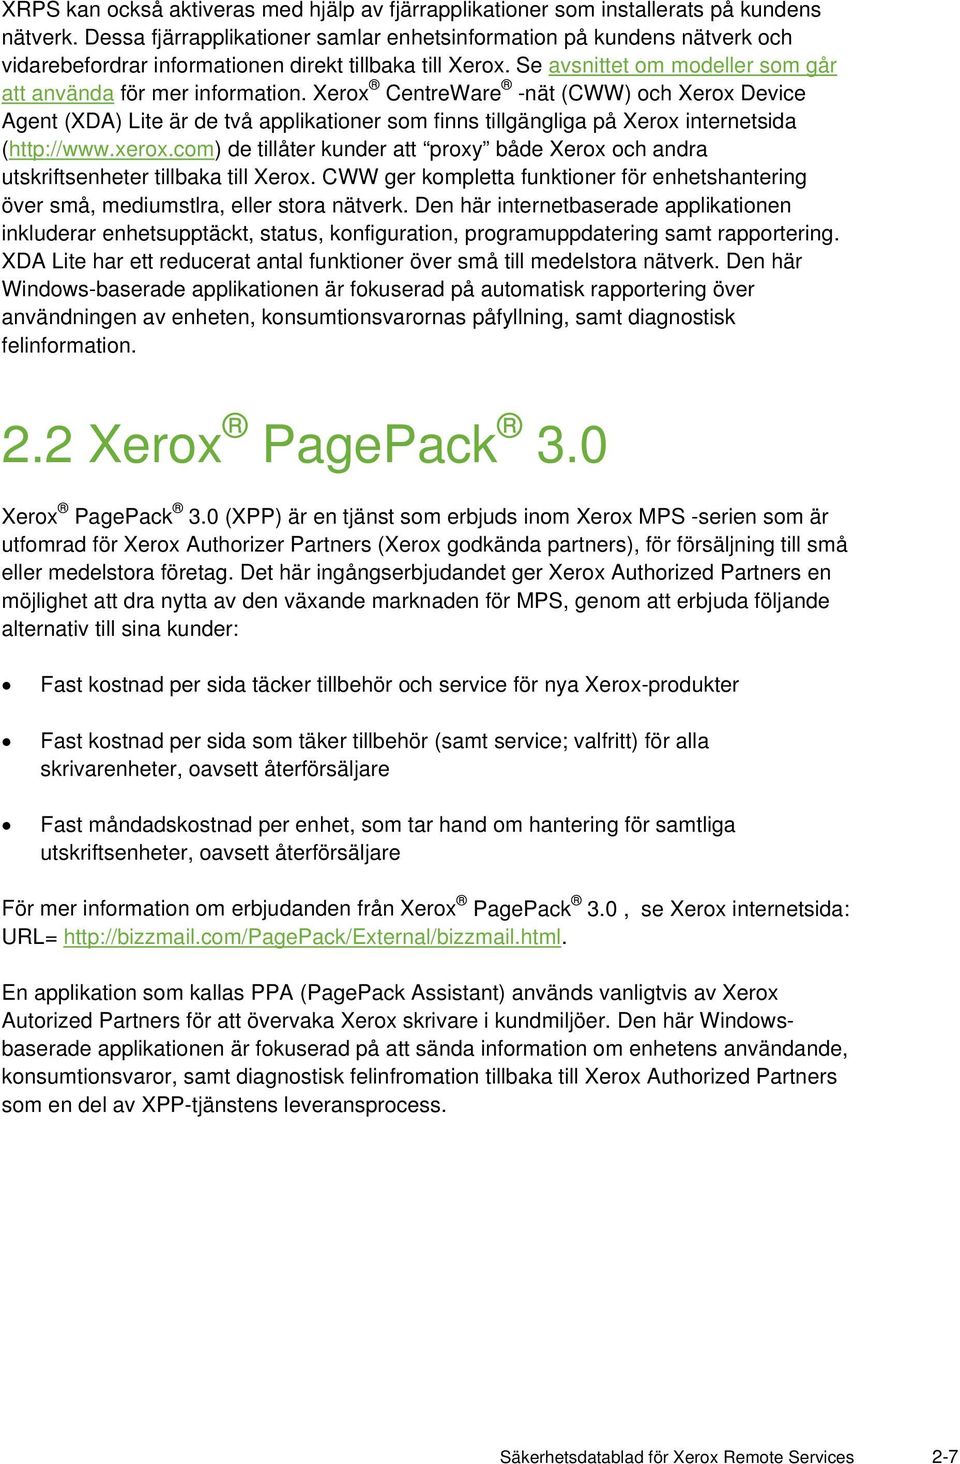 Xerox CentreWare -nät (CWW) och Xerox Device Agent (XDA) Lite är de två applikationer som finns tillgängliga på Xerox internetsida (http://www.xerox.